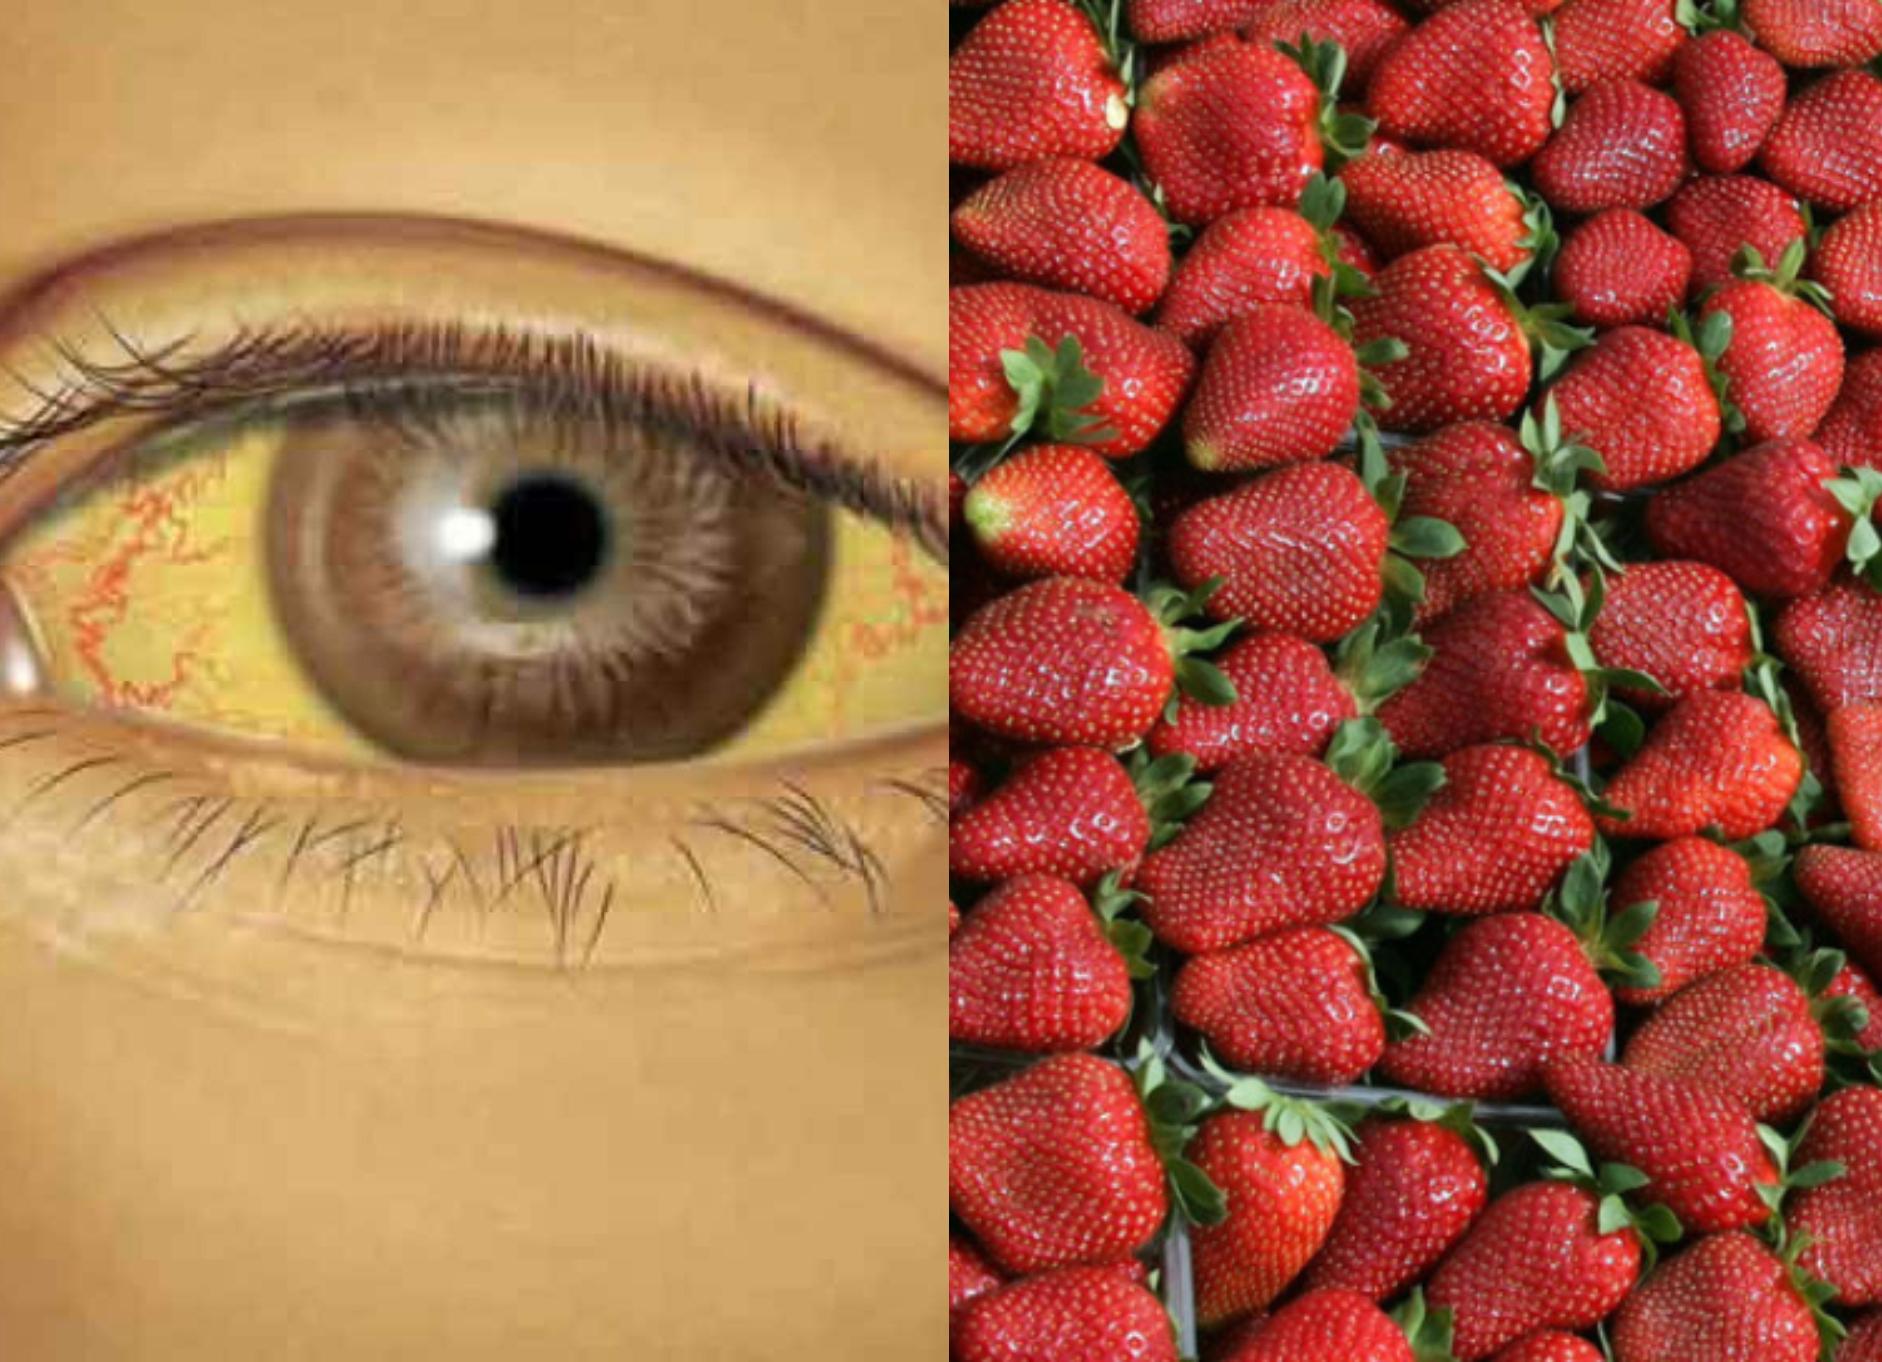 Ηπατίτιδα Α: Ευθύνονται οι φράουλες για κρούσματα;